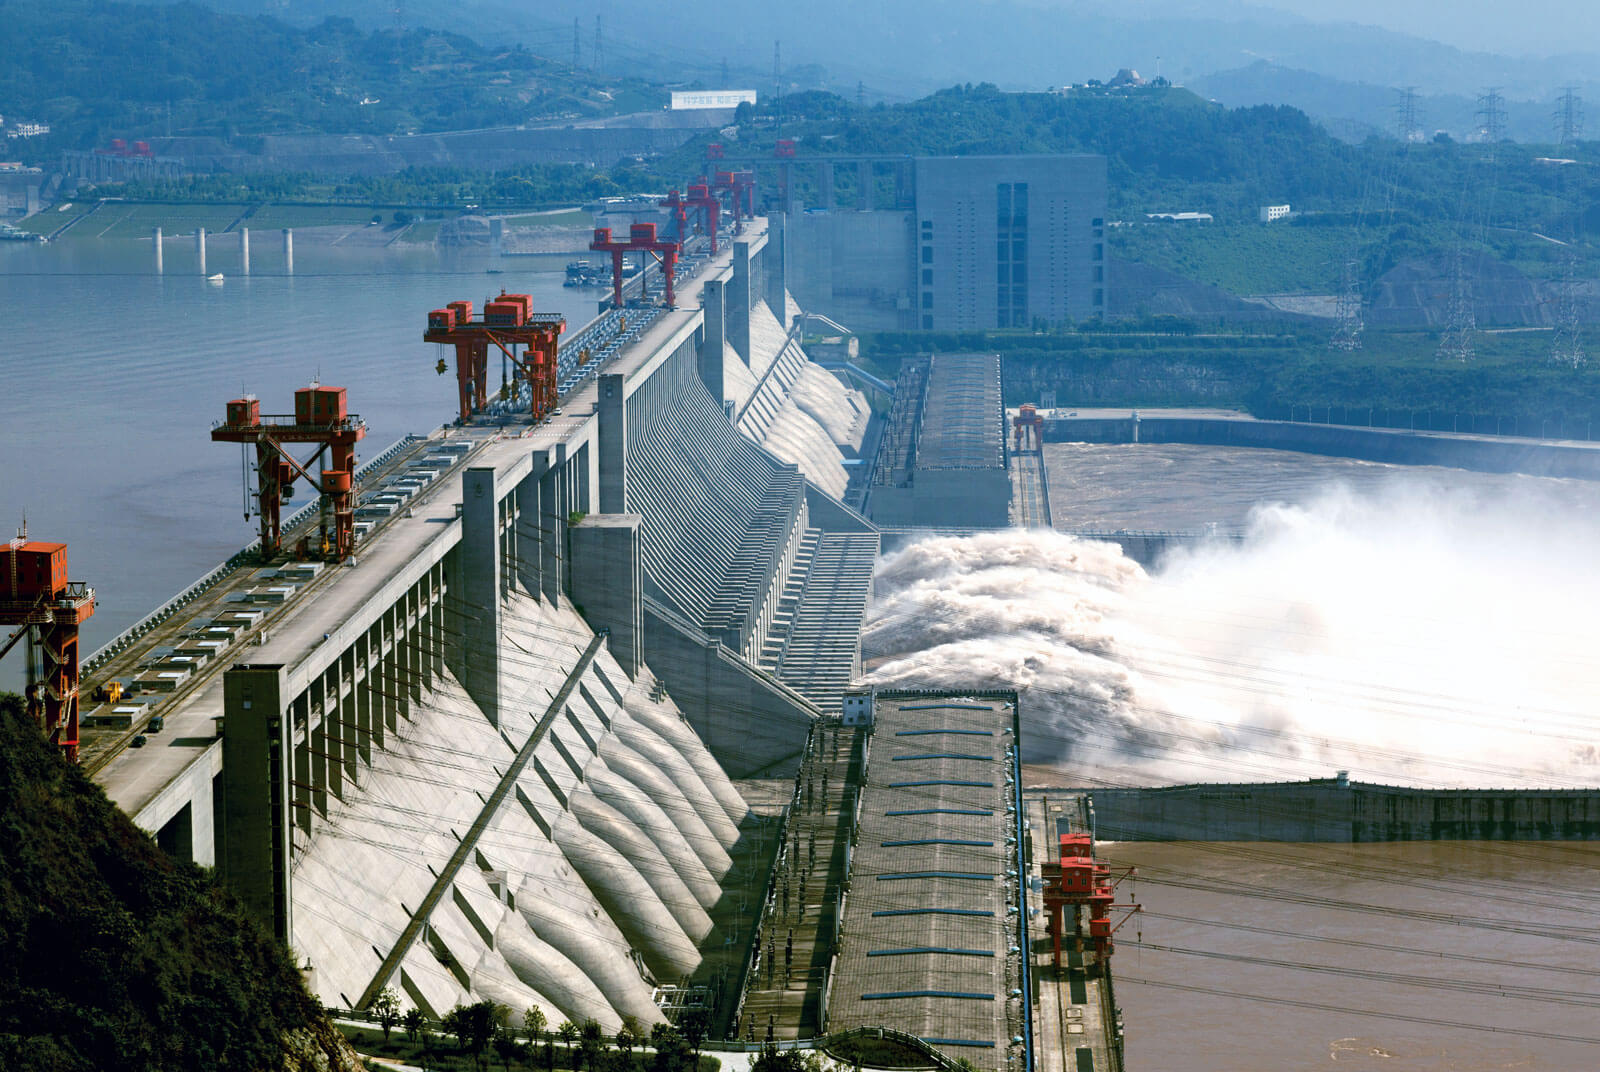 Название рек на которых были возведены электростанции. ГЭС «три ущелья» («Санься»). ГЭС три ущелья Китай. ГЭС на Янцзы. Три ущелья, Китай (22,5 ГВТ).